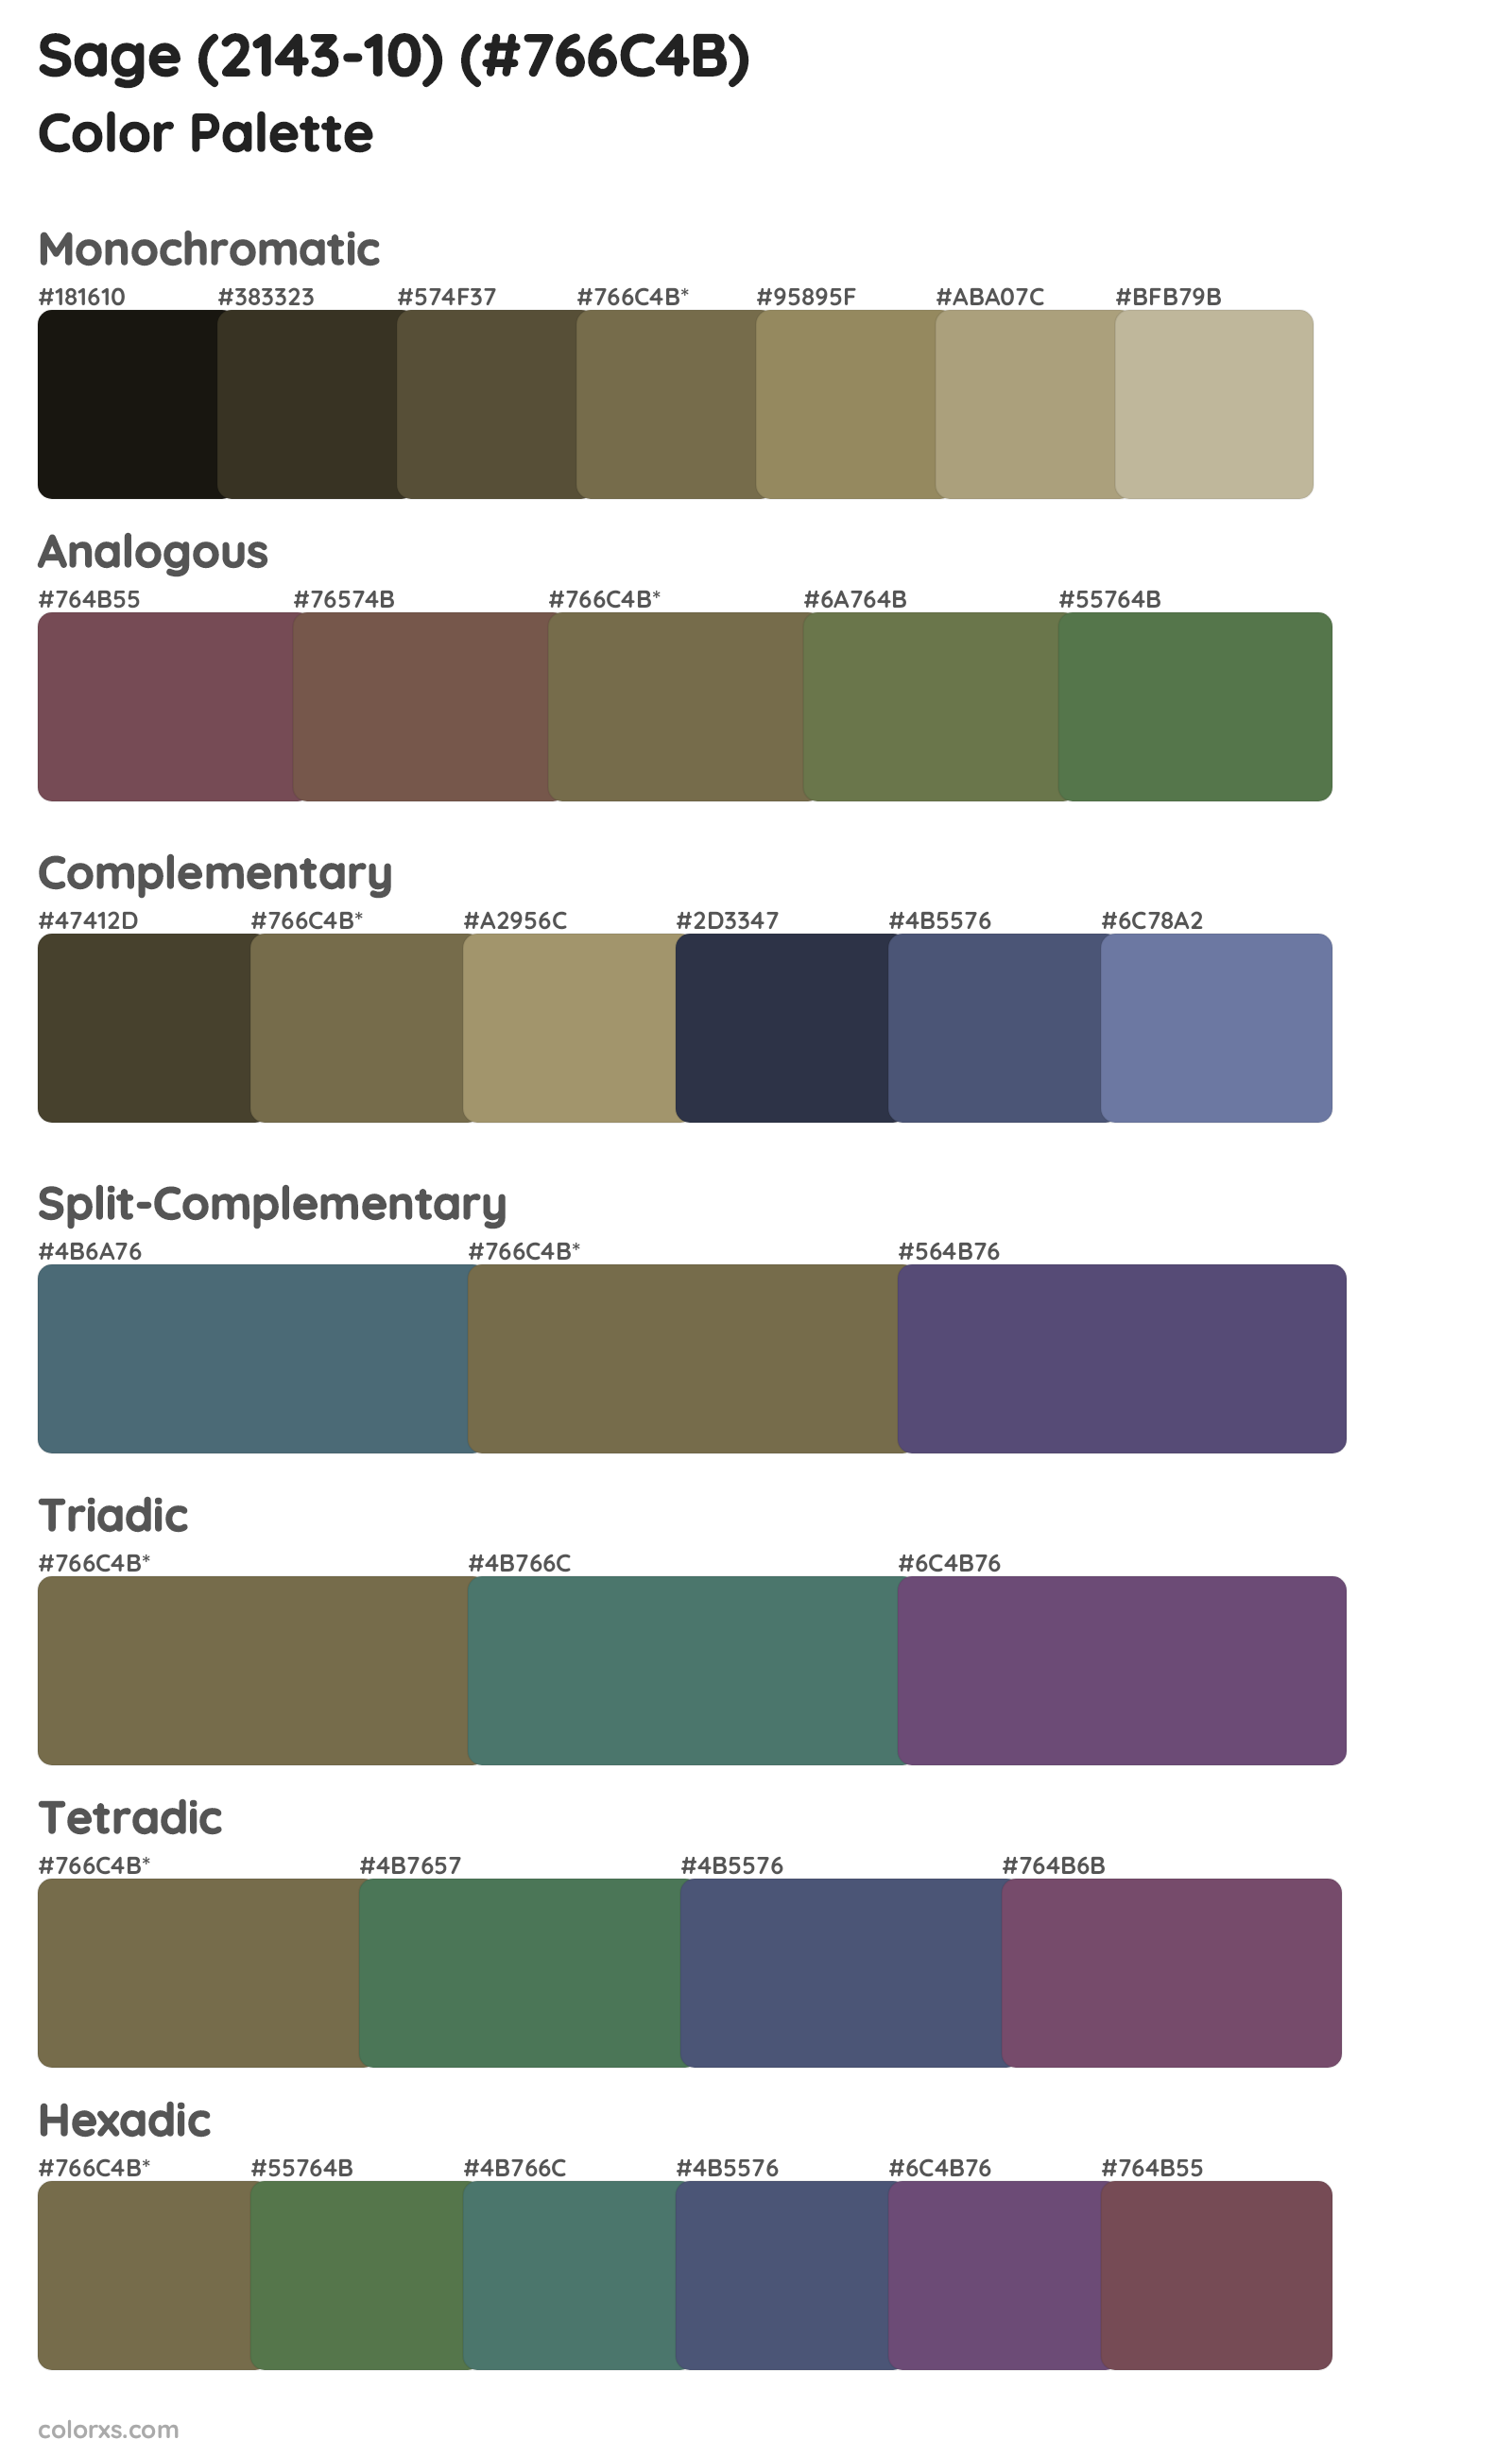 Sage (2143-10) Color Scheme Palettes